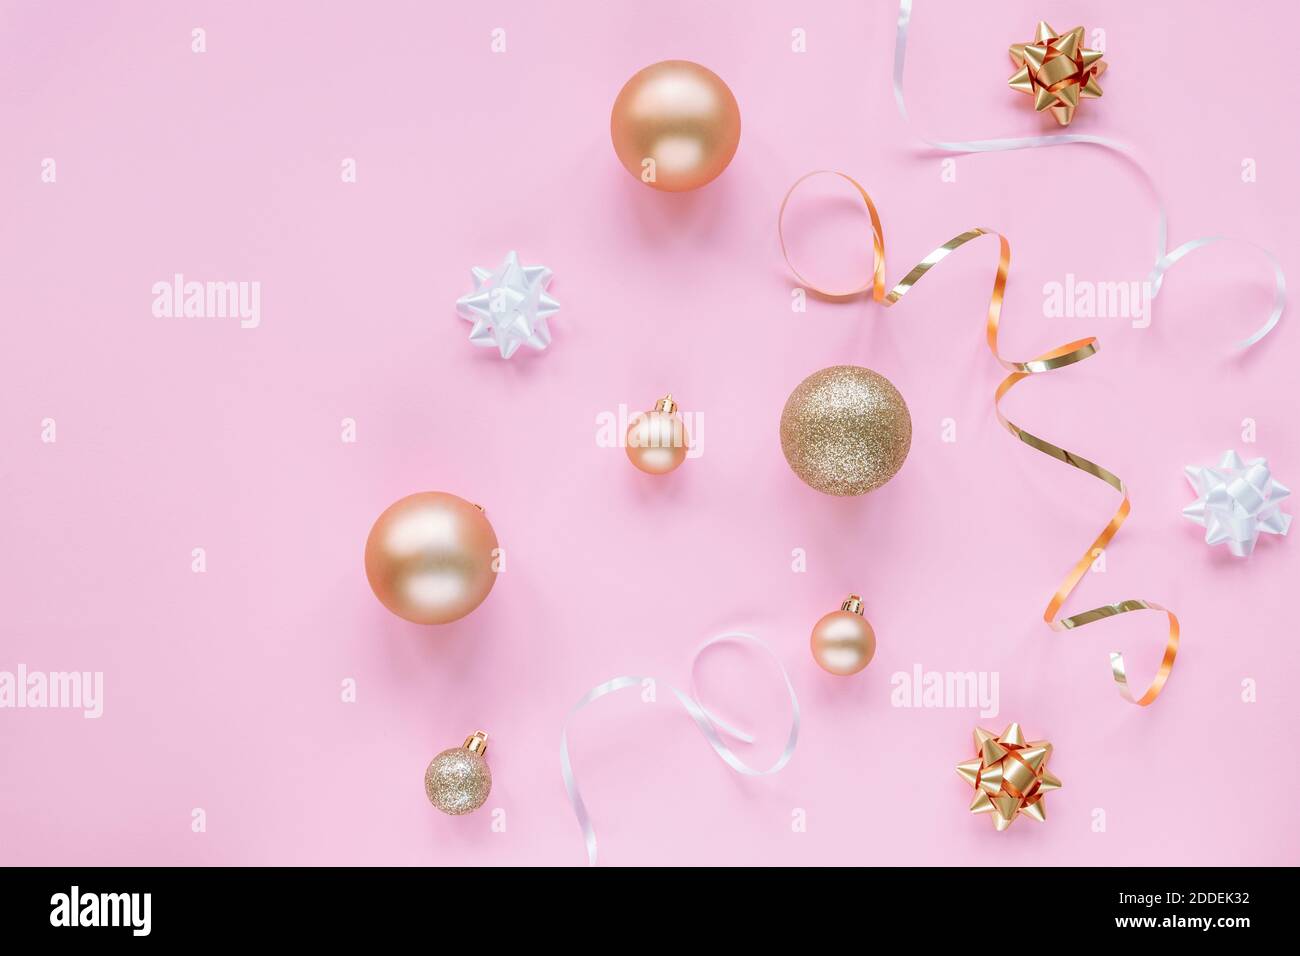 Fond de fête rose avec boules de Noël blanches et dorées, guirlande et boules. Vue de dessus, plat, espace de copie. Banque D'Images